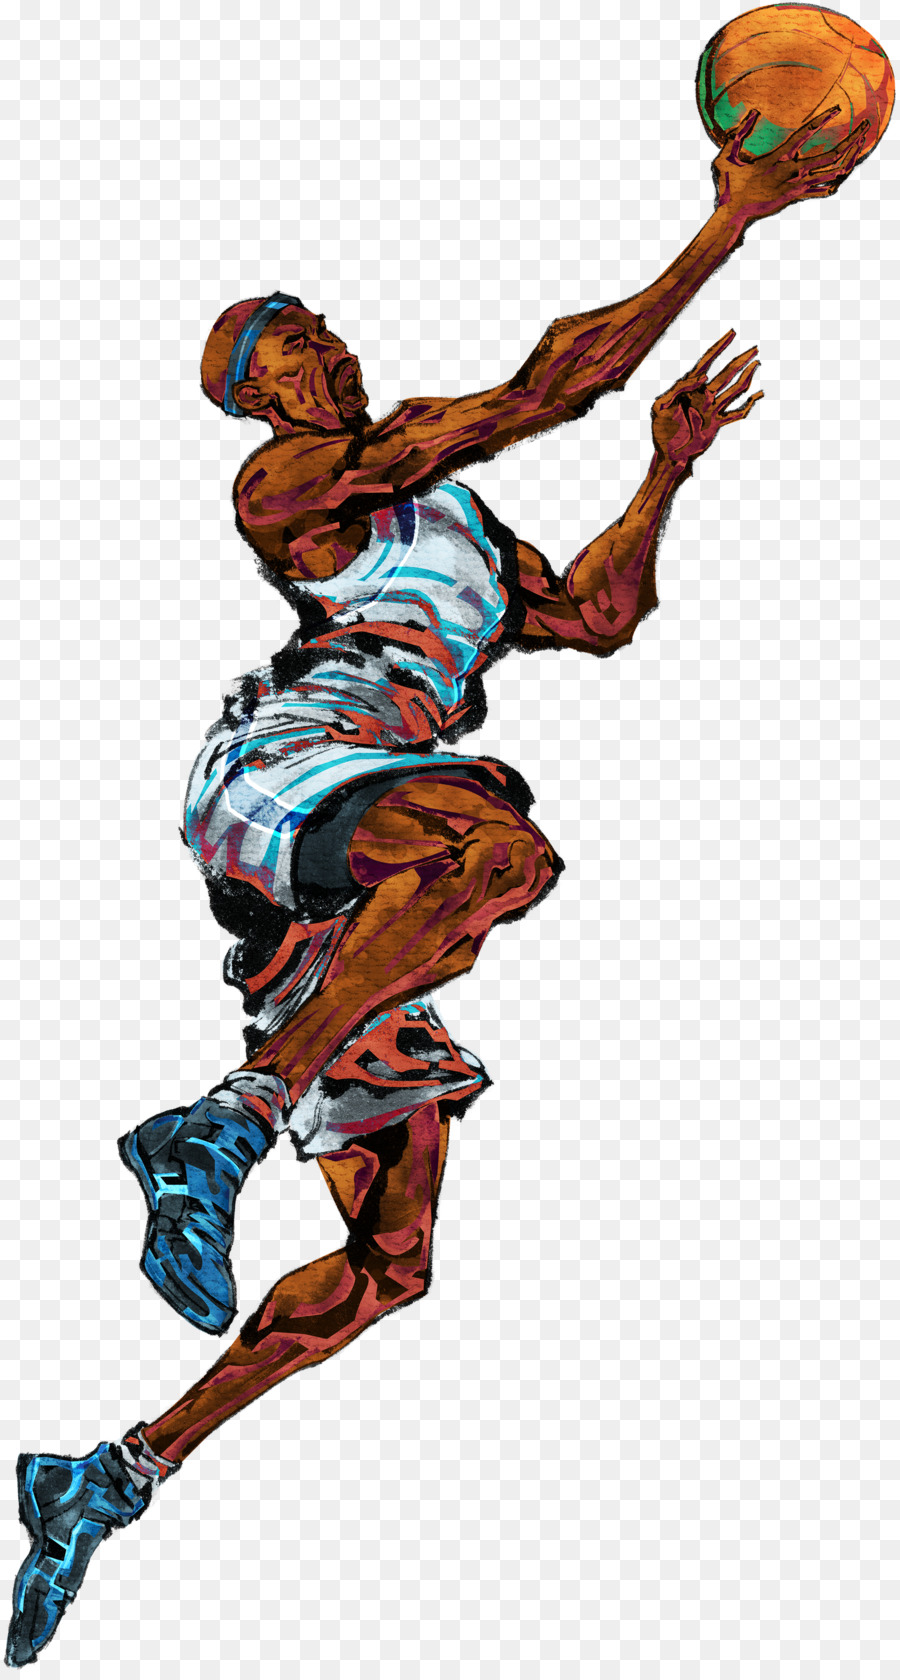 Bức tranh bóng Rổ người chơi thể Thao Nền - Vẽ tay chơi bóng rổ liệu png  tải về - Miễn phí trong suốt Nhân Vật Hư Cấu png Tải về.